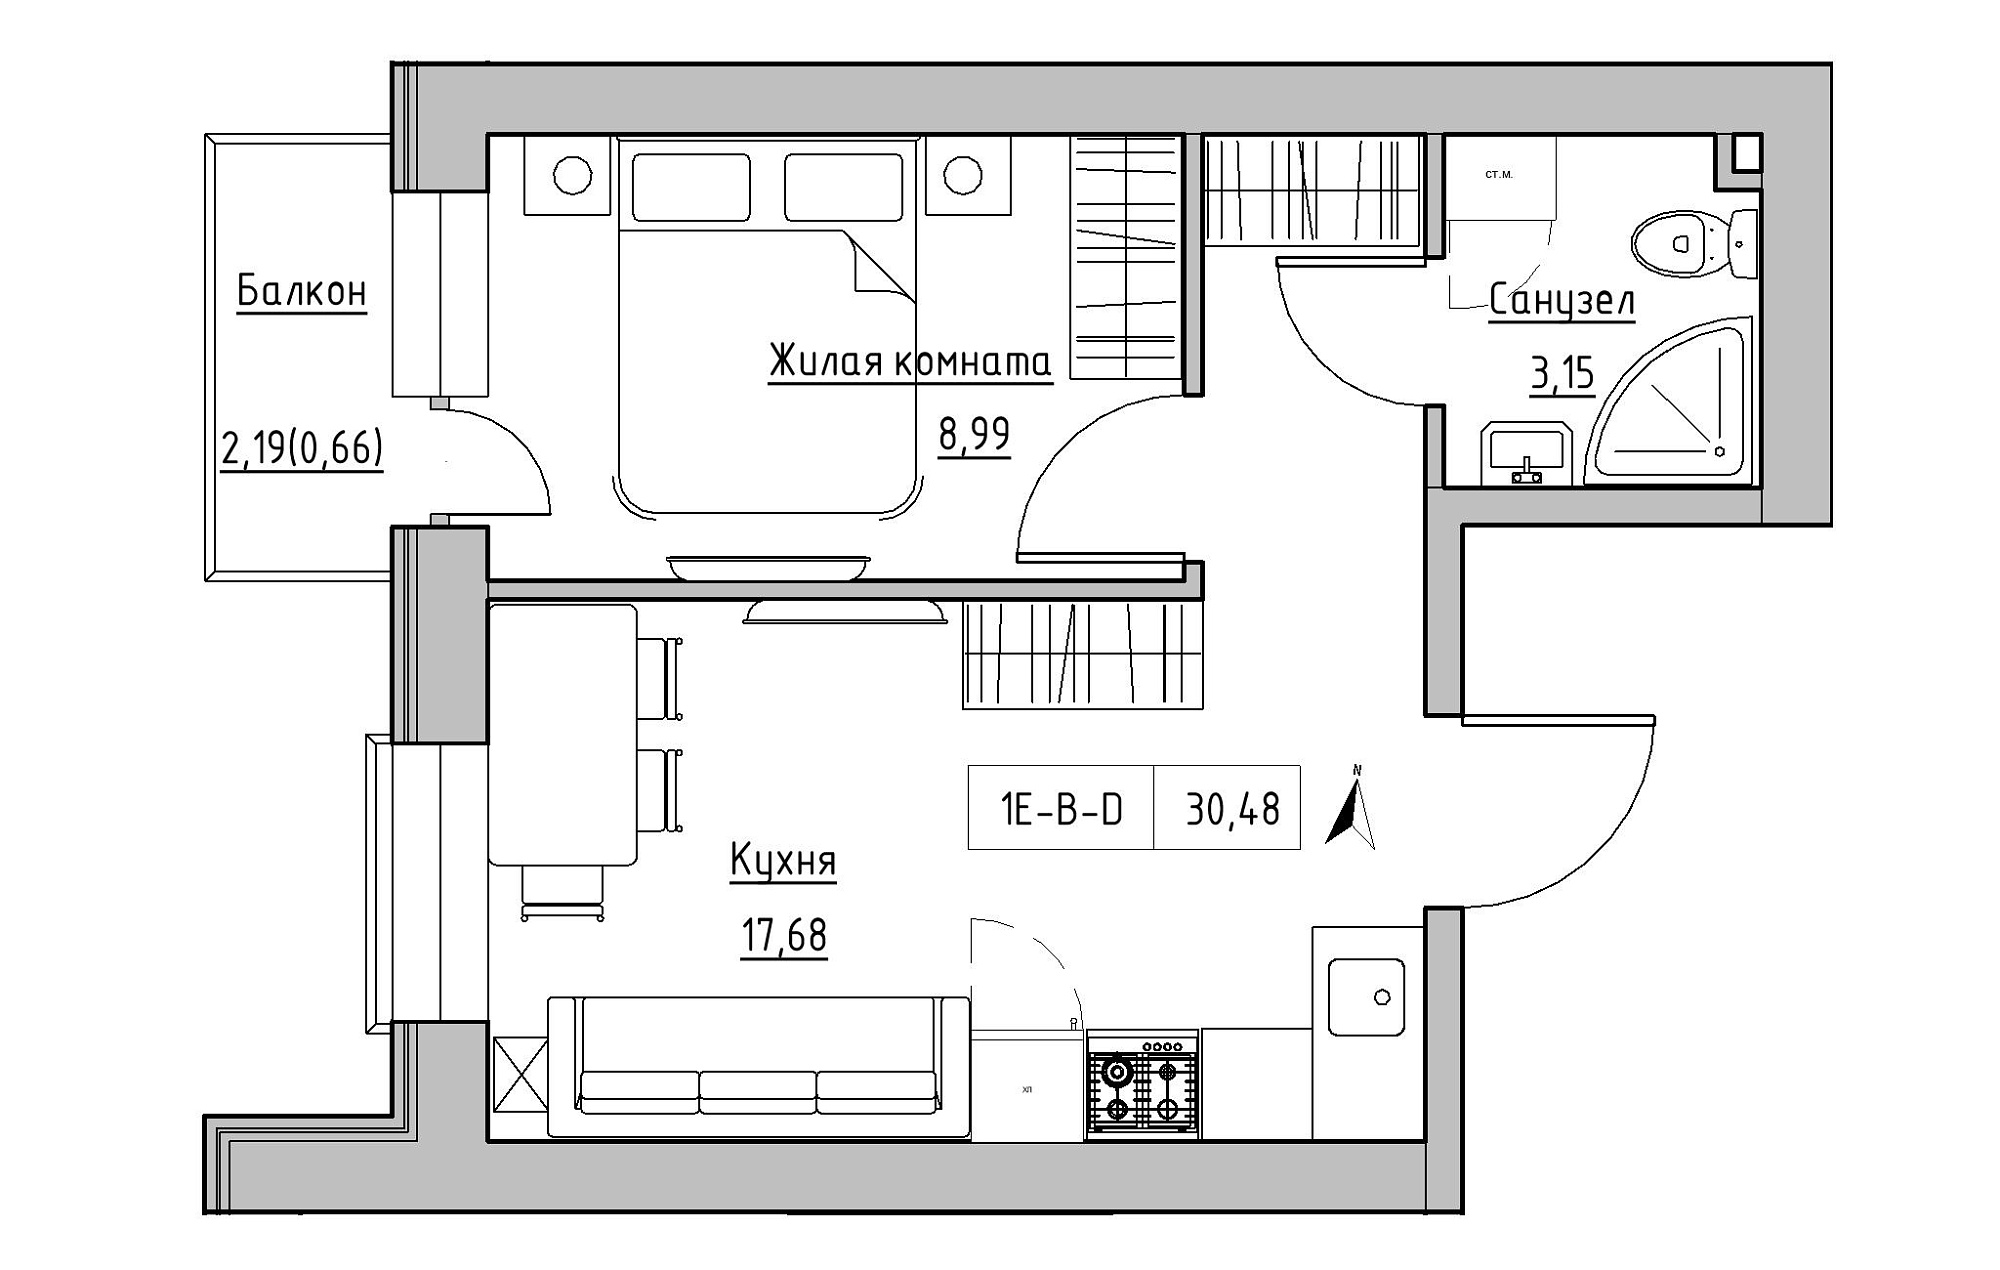 Планування 1-к квартира площею 30.48м2, KS-019-02/0003.